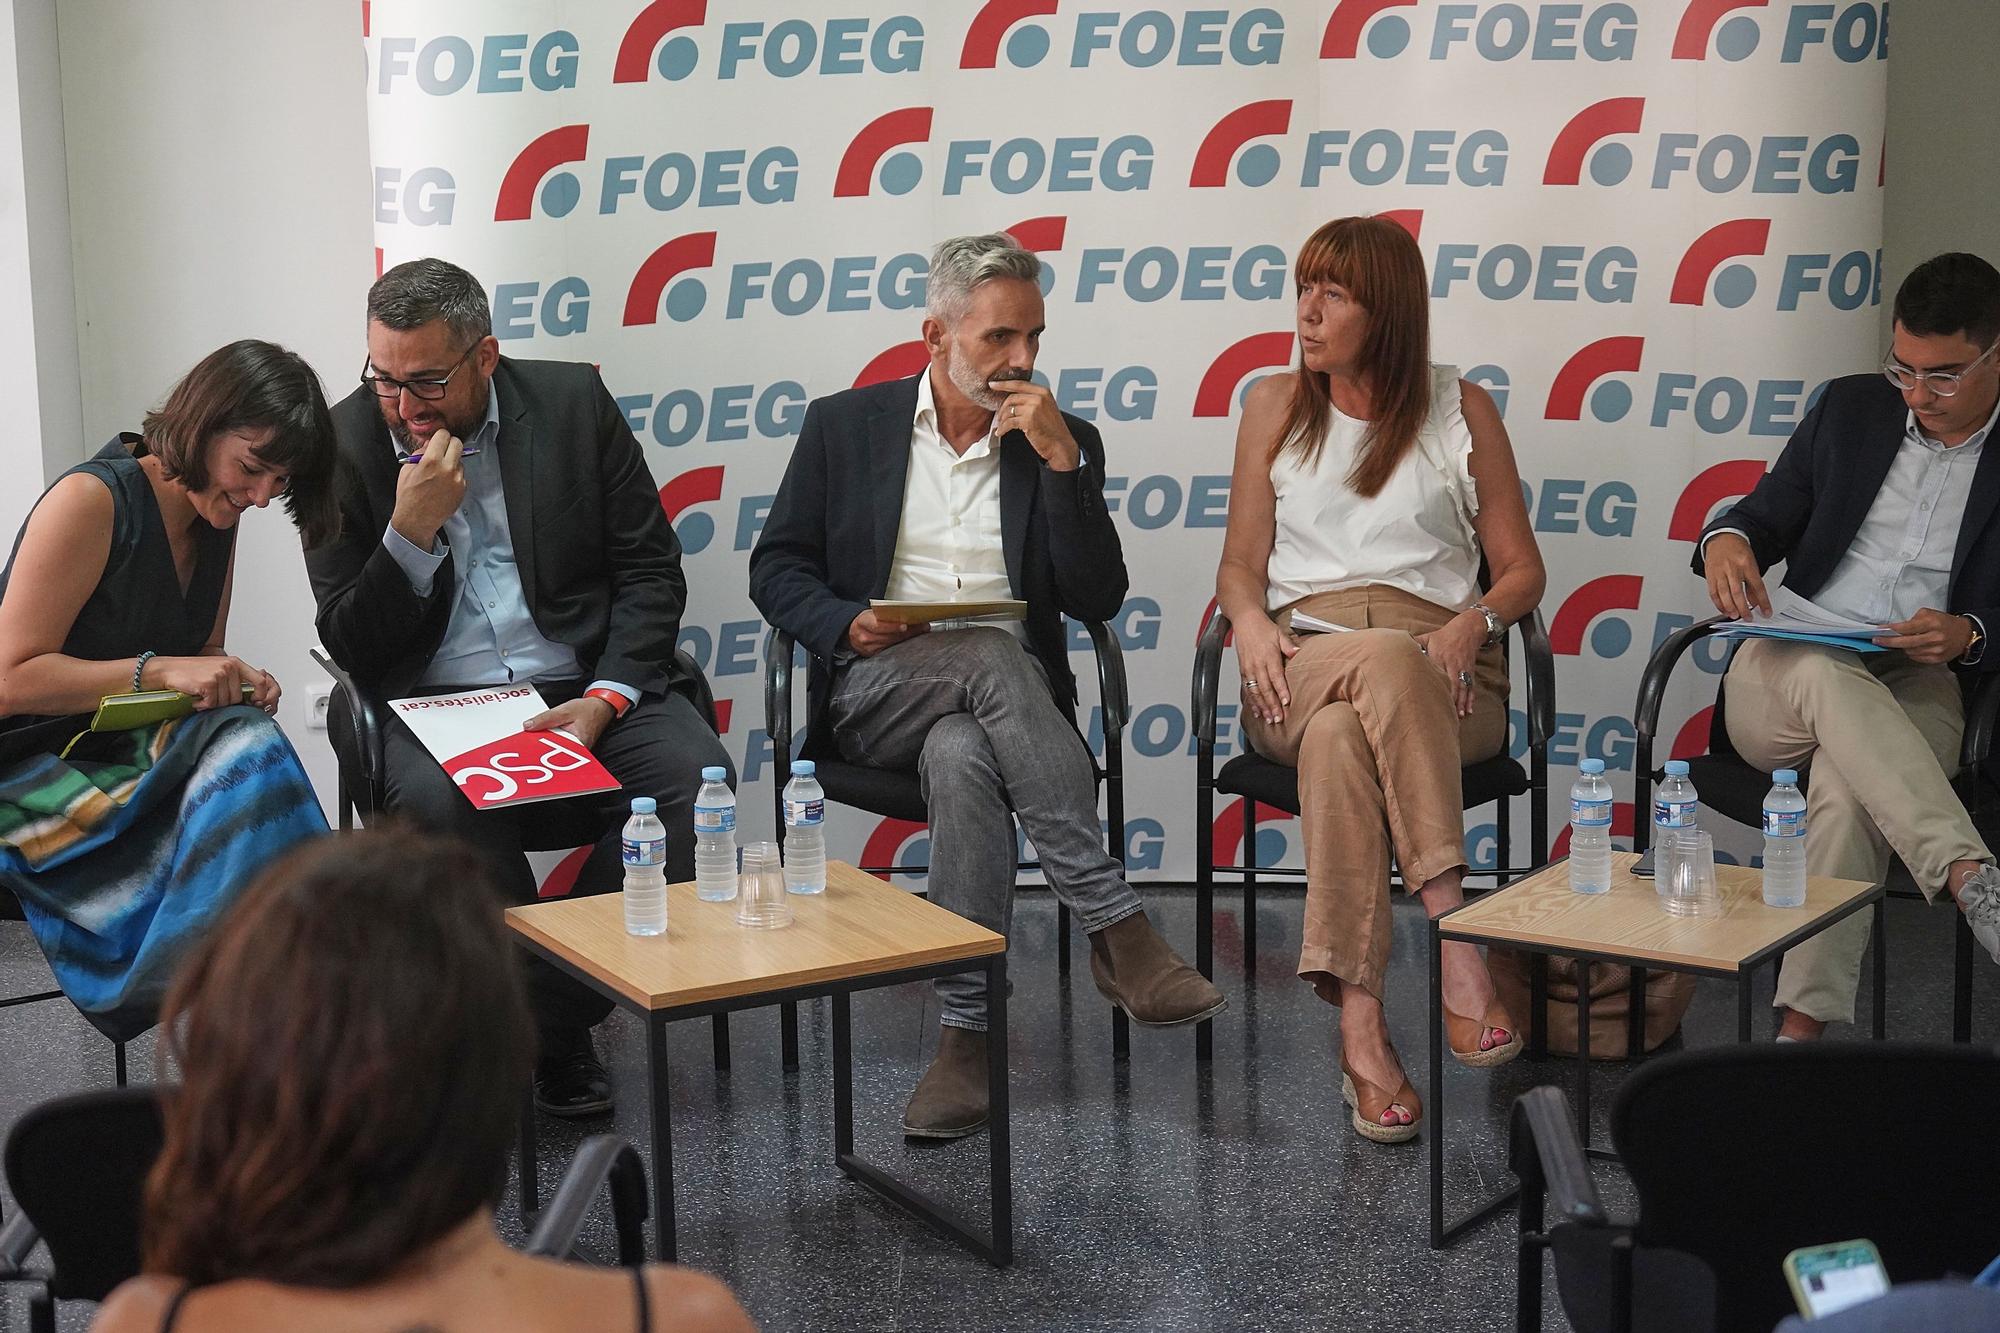 Les millors imatges del debat electoral organitzat oer la FOEG